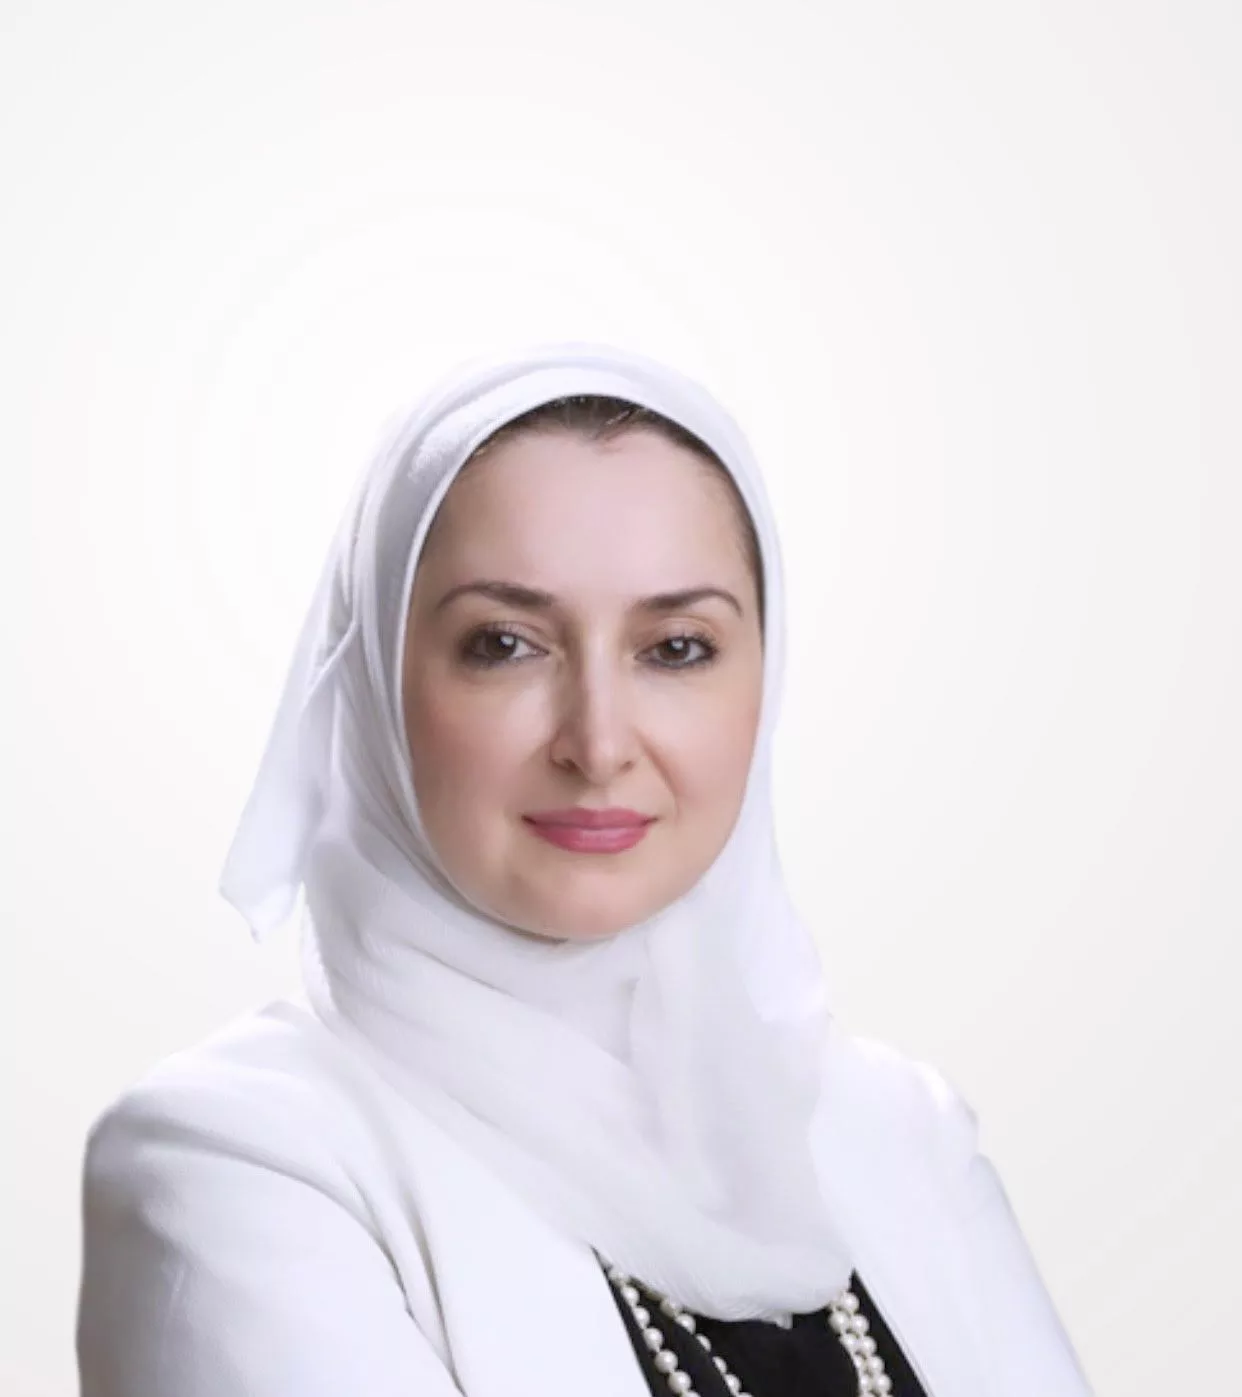 Dr. Hanaa Al-Banna